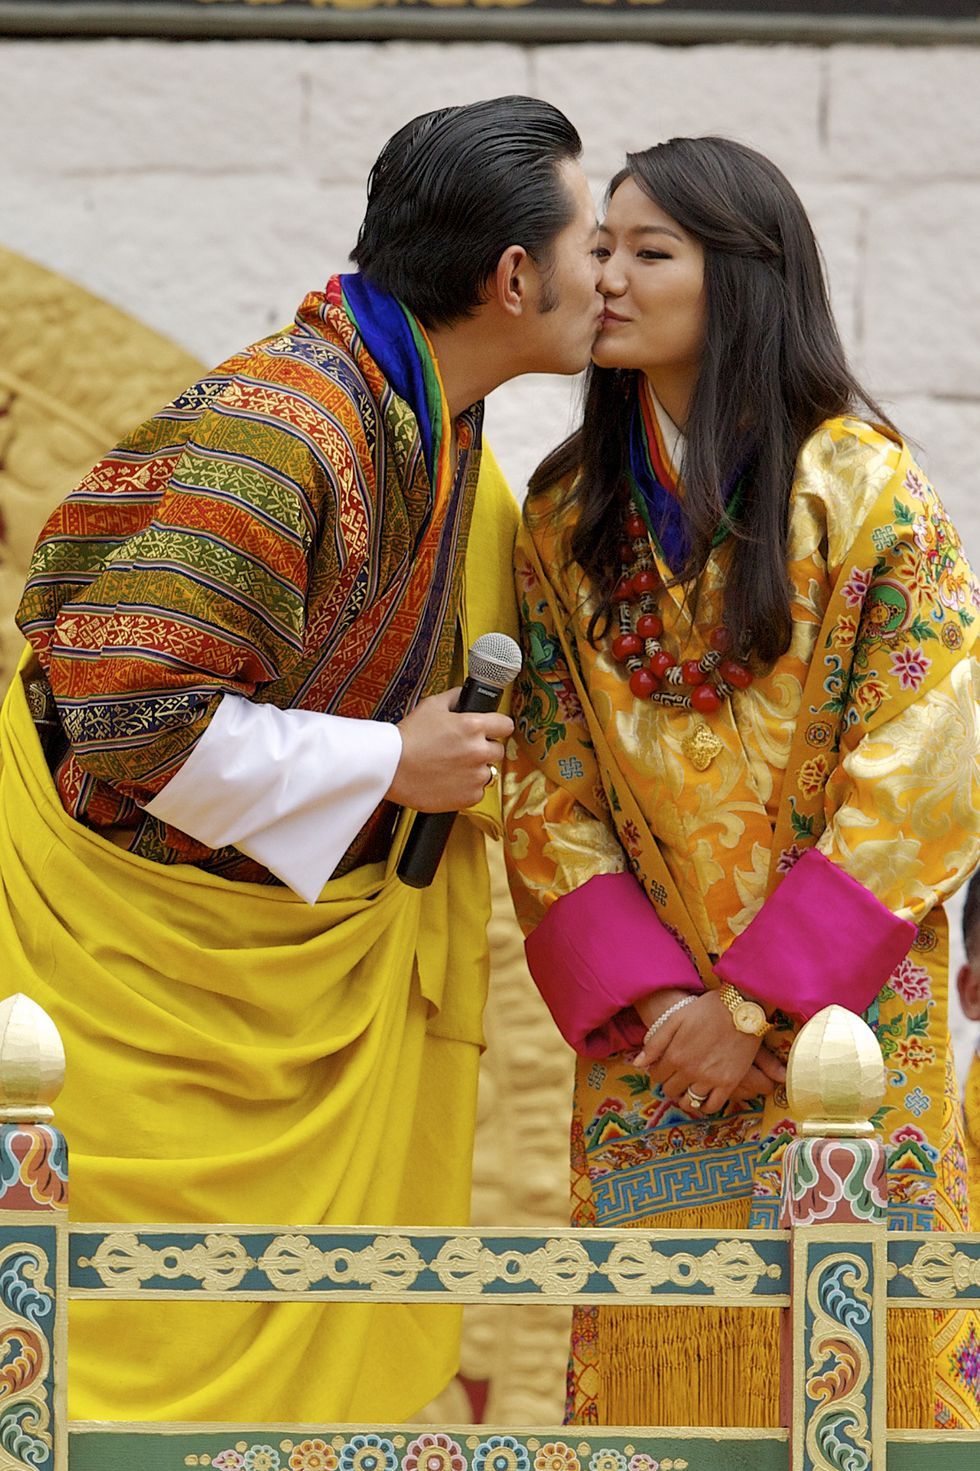 幸せのおすそ分け ブータン国王 一家のファミリーフォト集